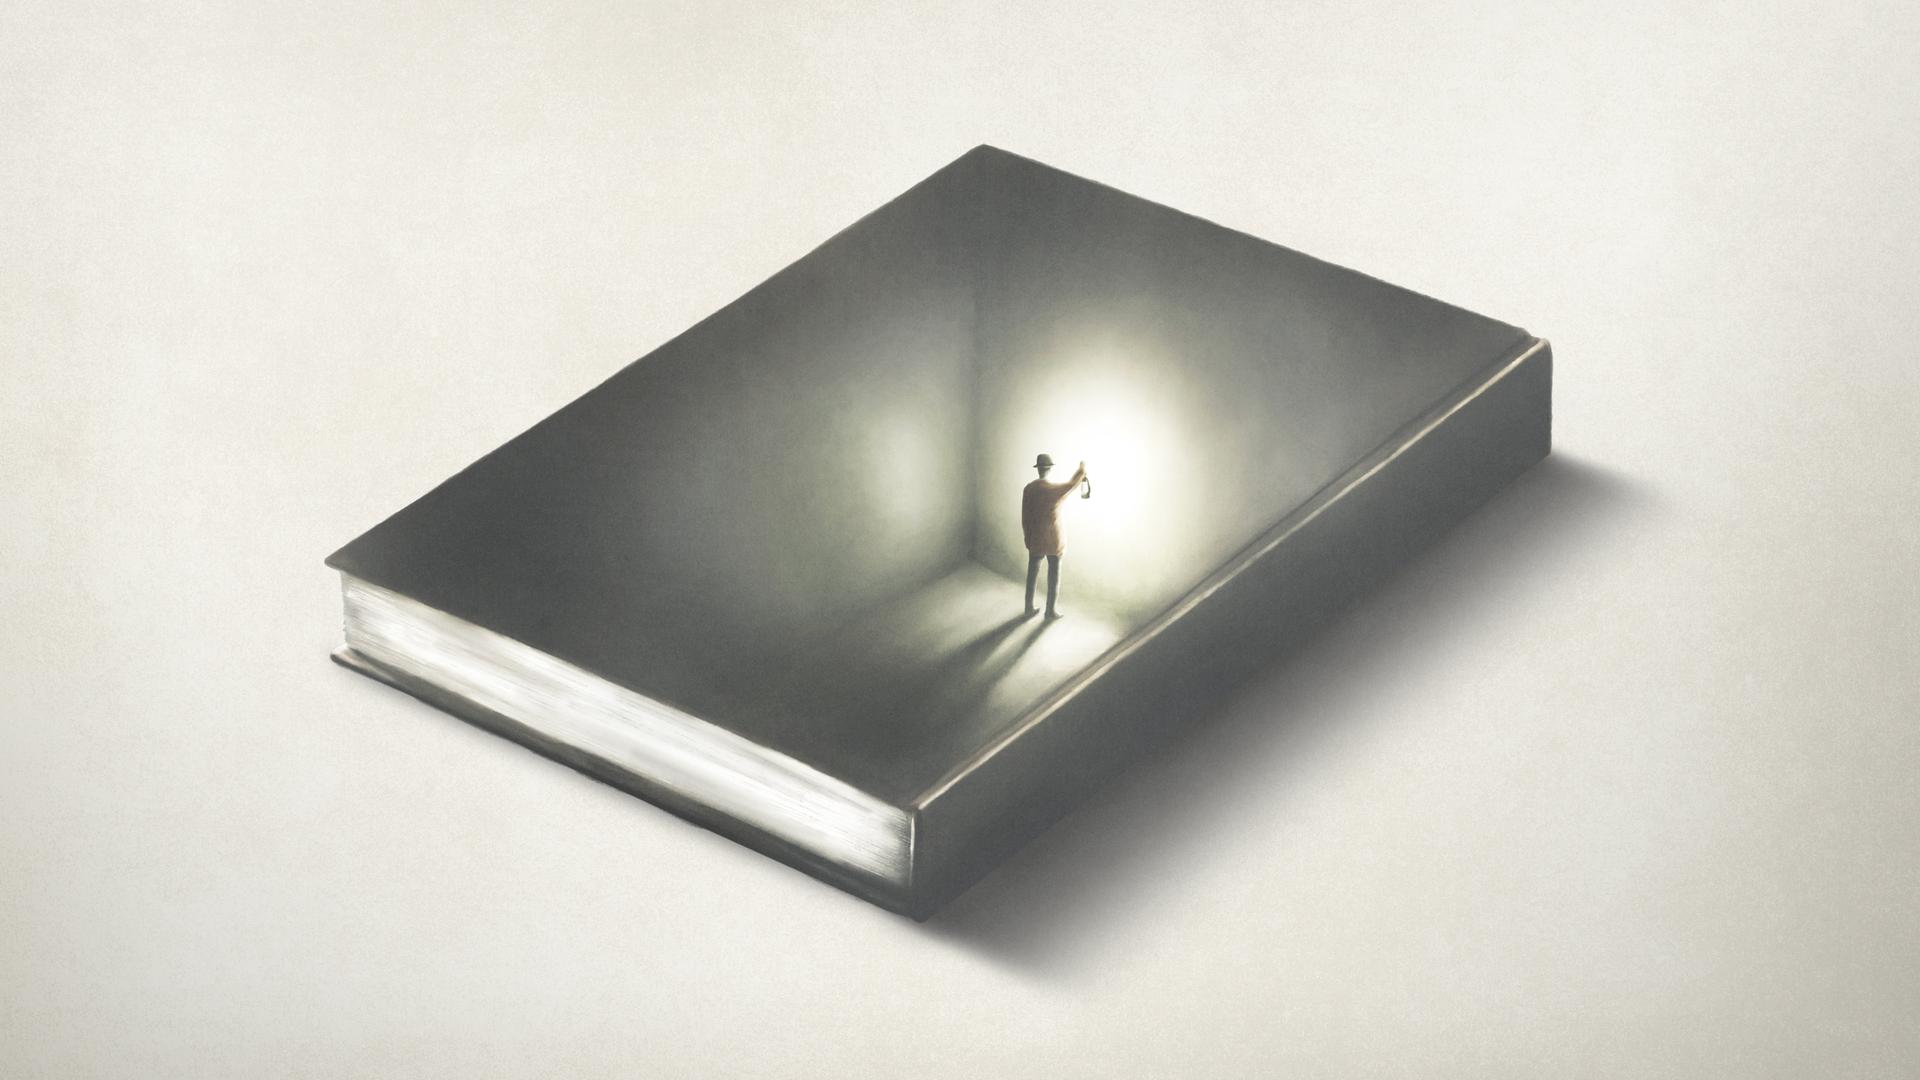 Illustration: Ein Mann in einem Buch hält eine Laterne, eine optische Illusion.